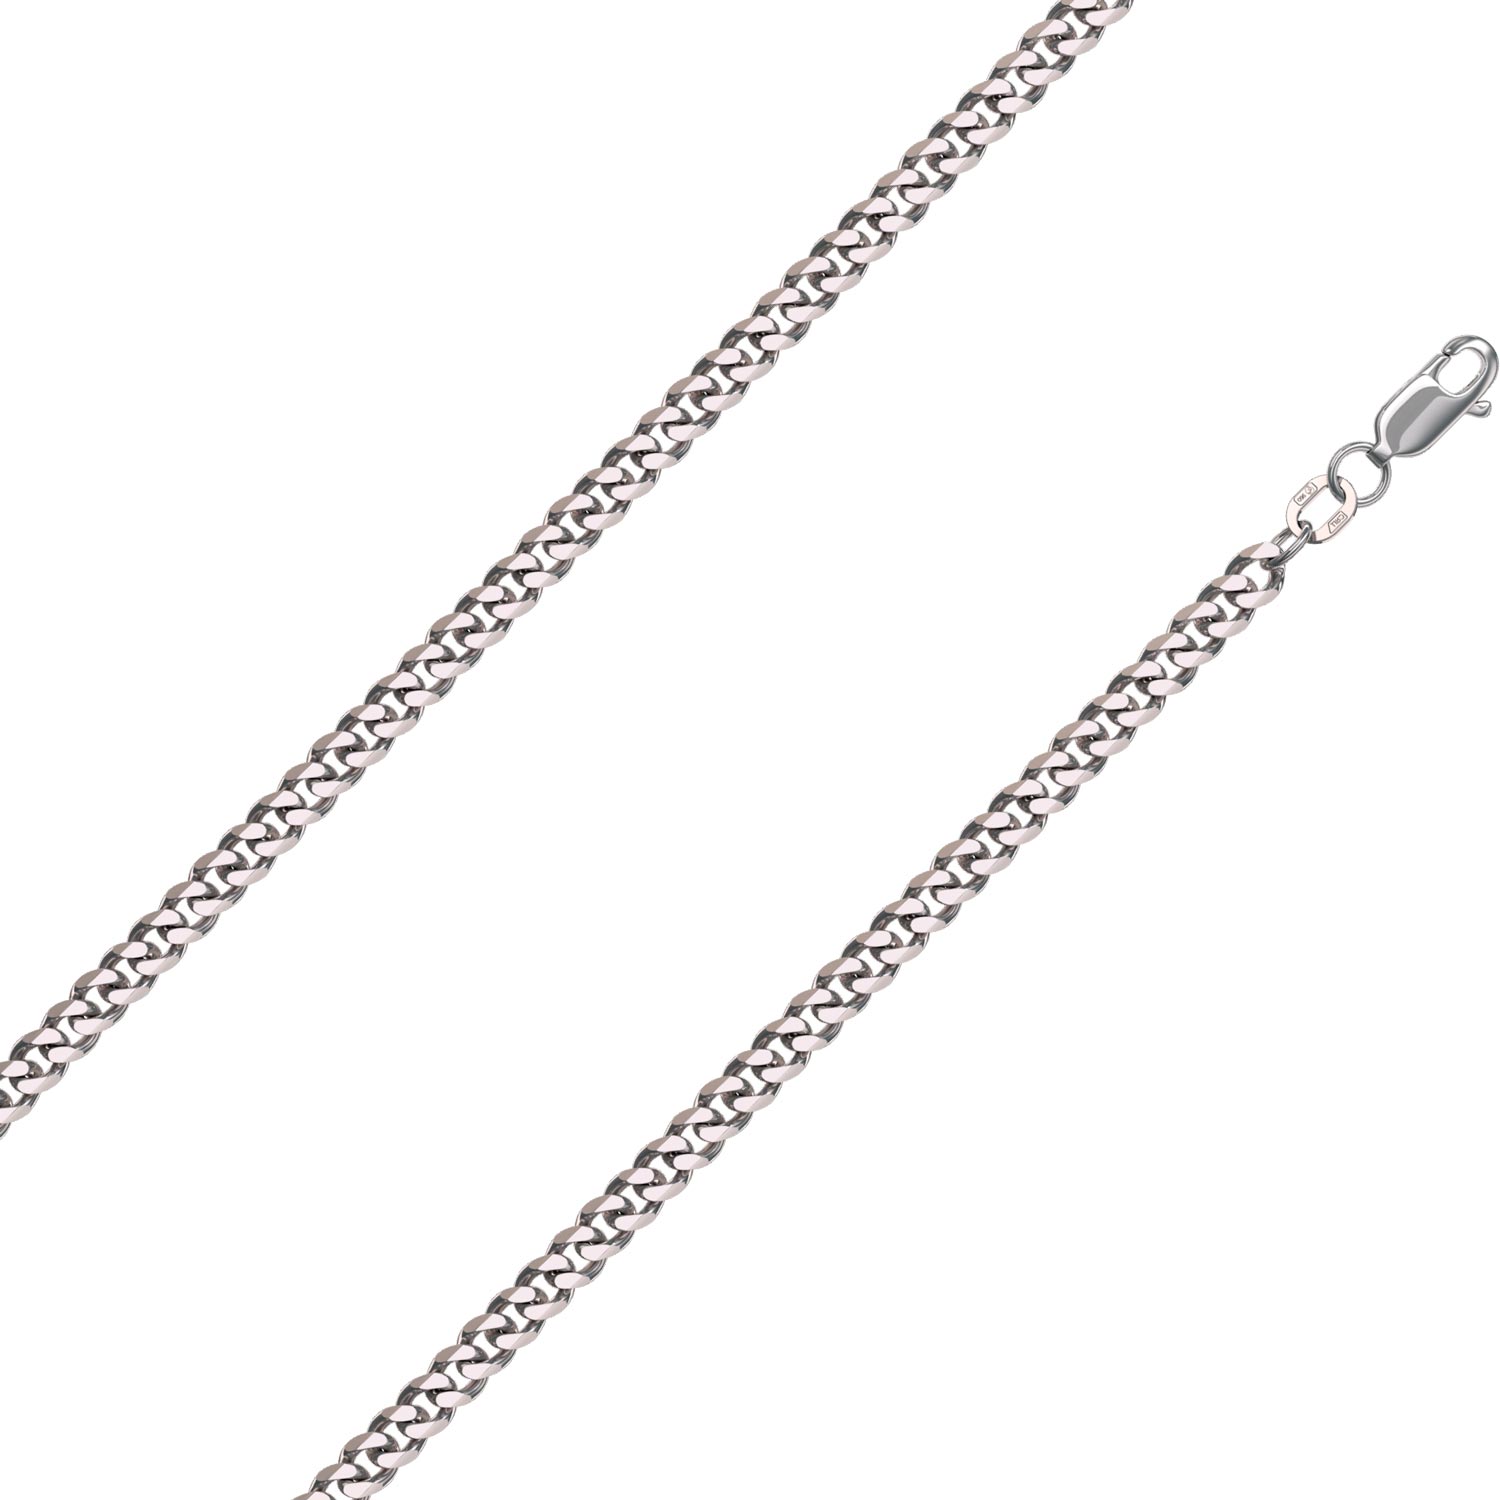 Мужская платиновая цепочка на шею Красцветмет NC-41-002-1-00 с плетением панцирное